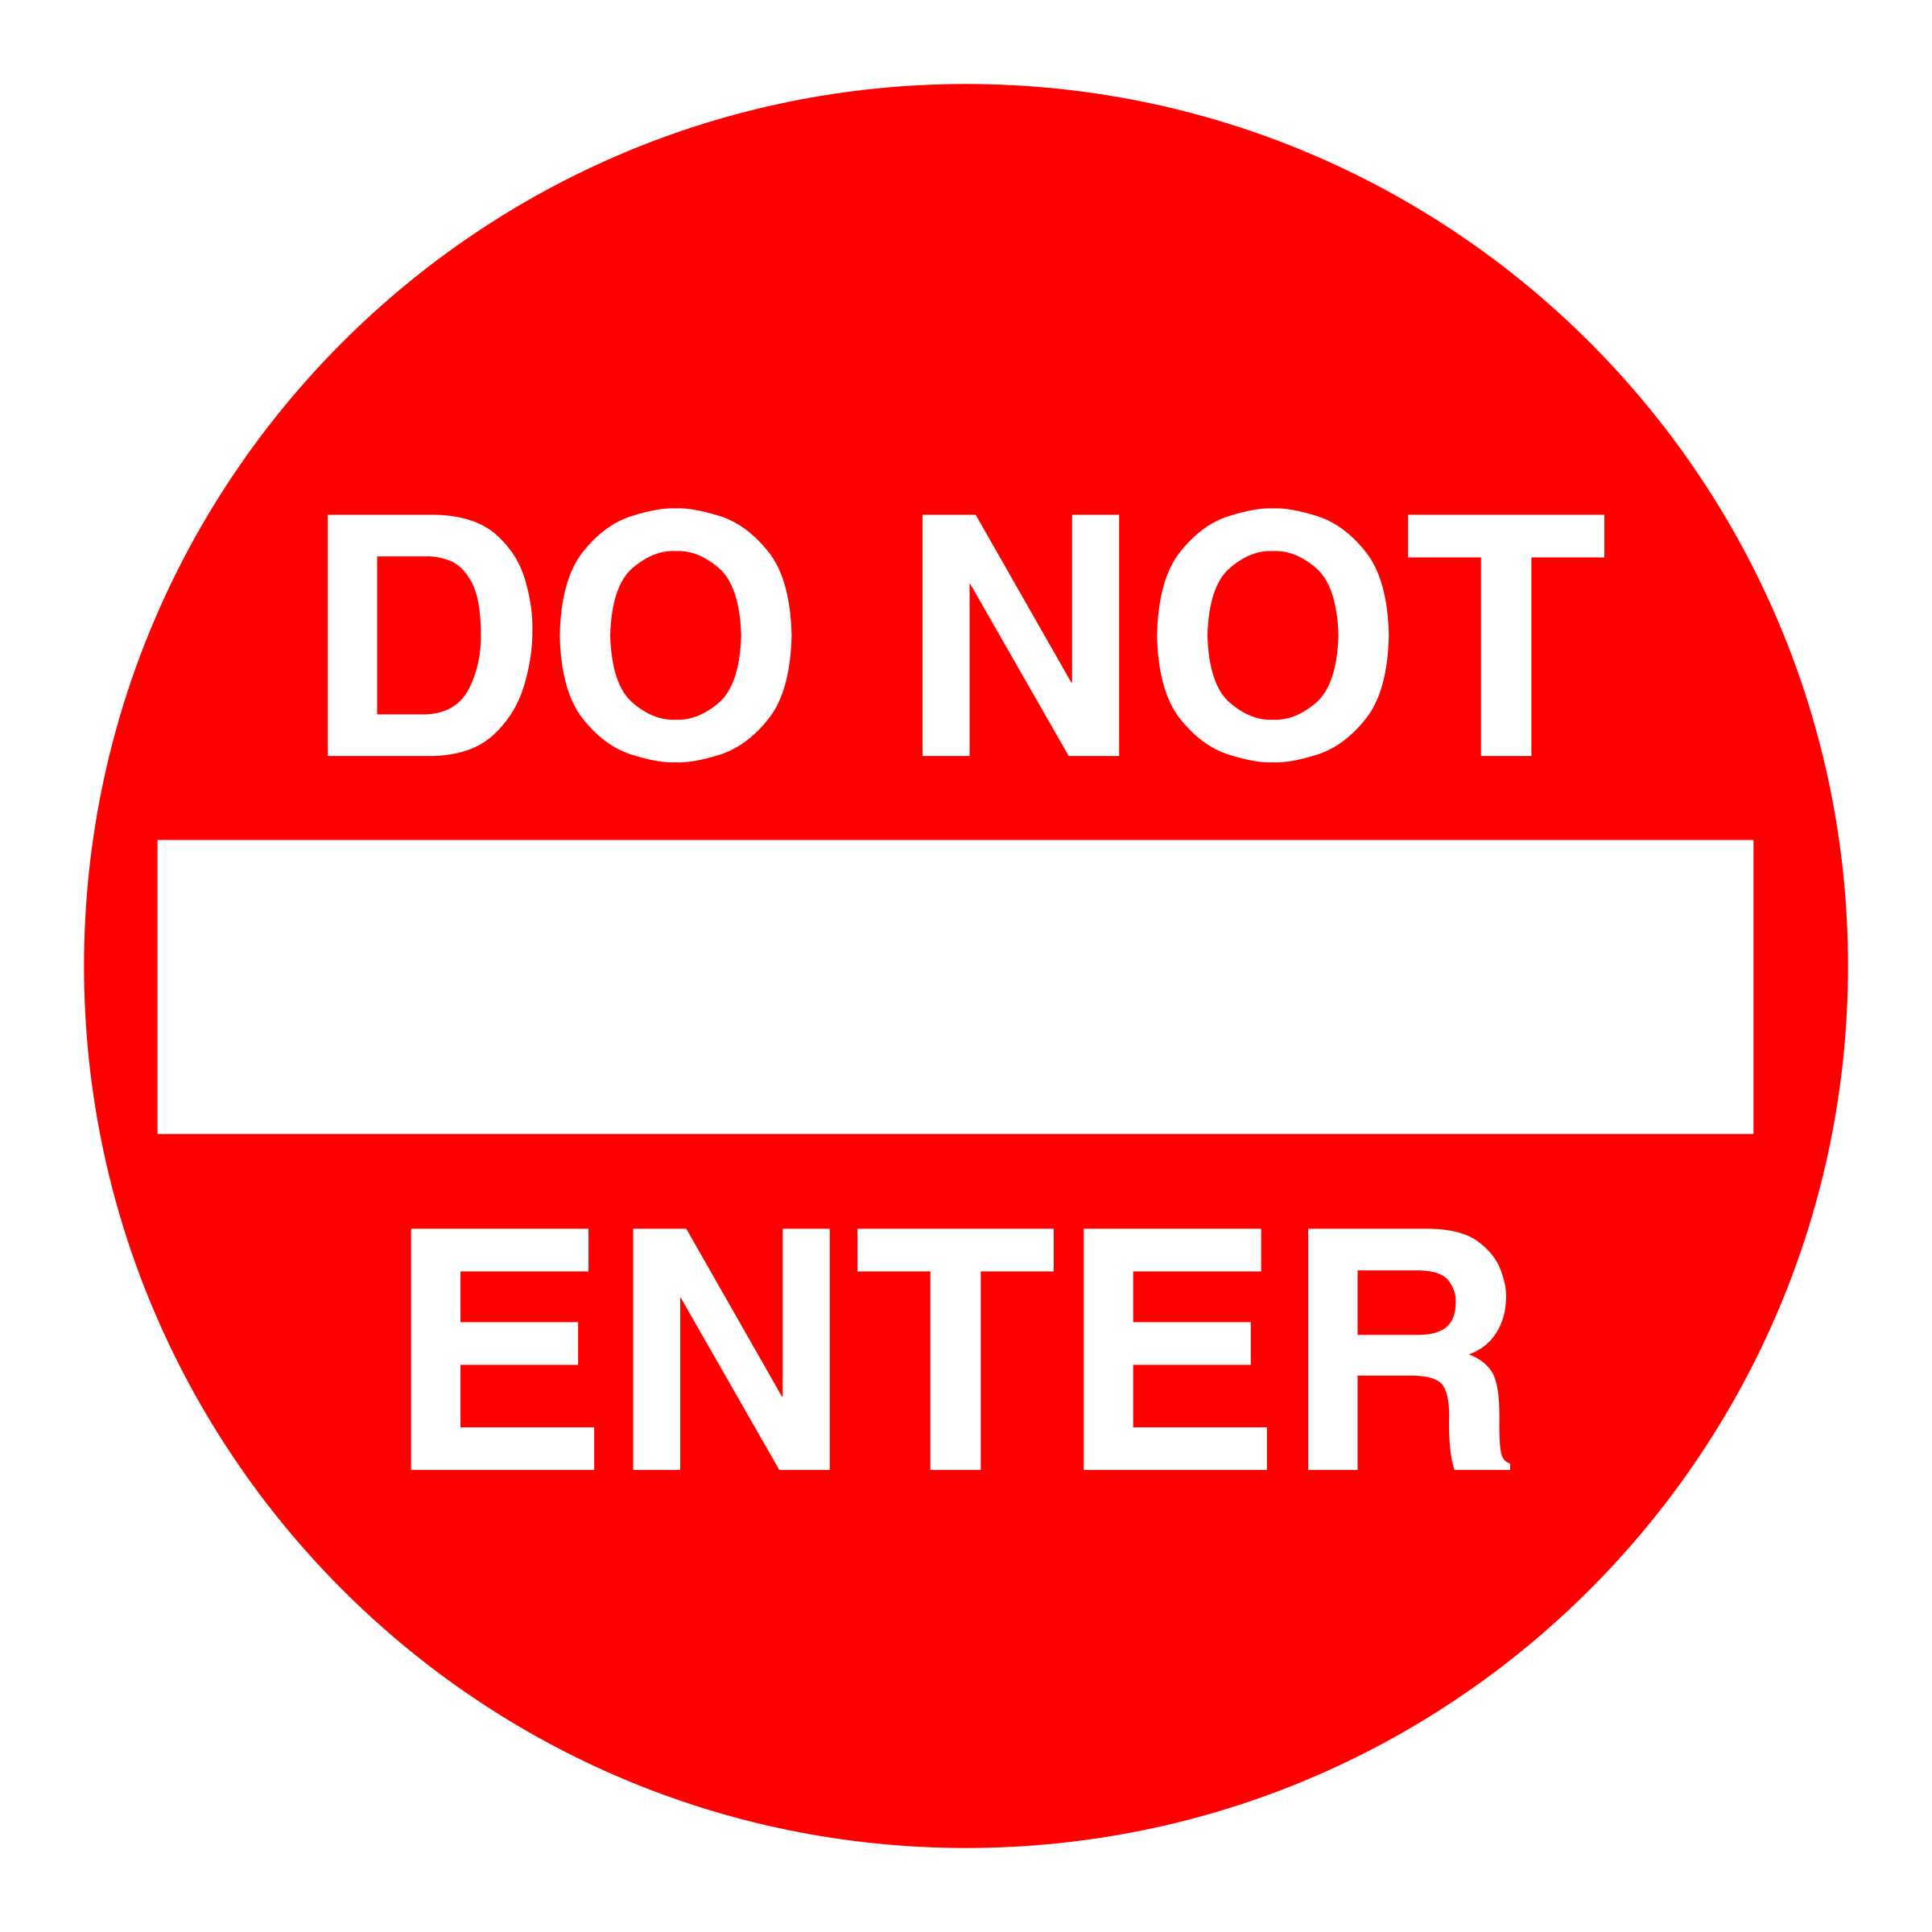 Prohibido entrar